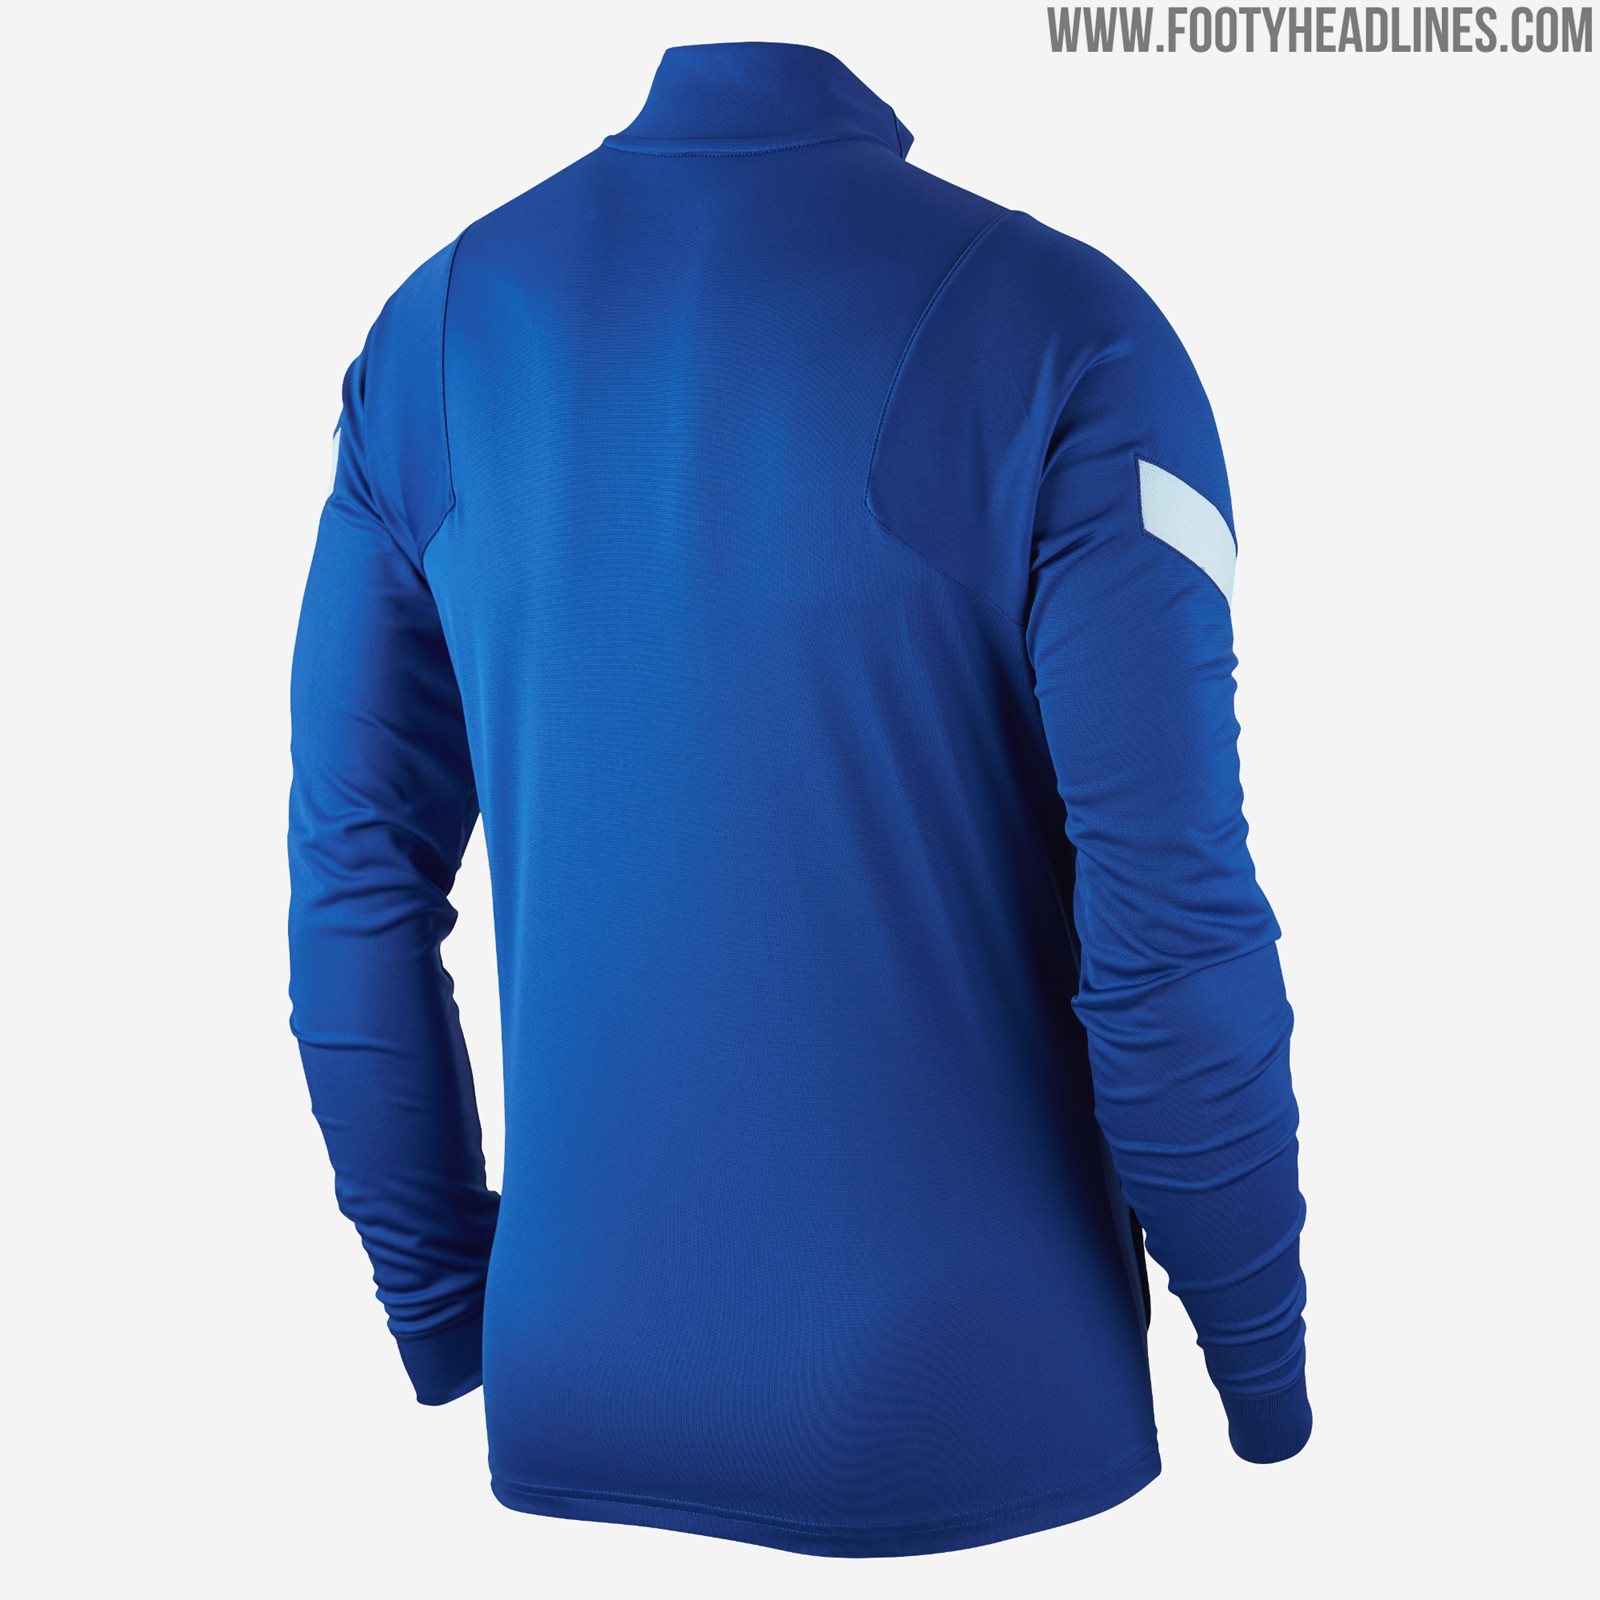 Away Kit Colors: Chelsea 20-21 Training Kit Leaked - No Sponsor Yet ...